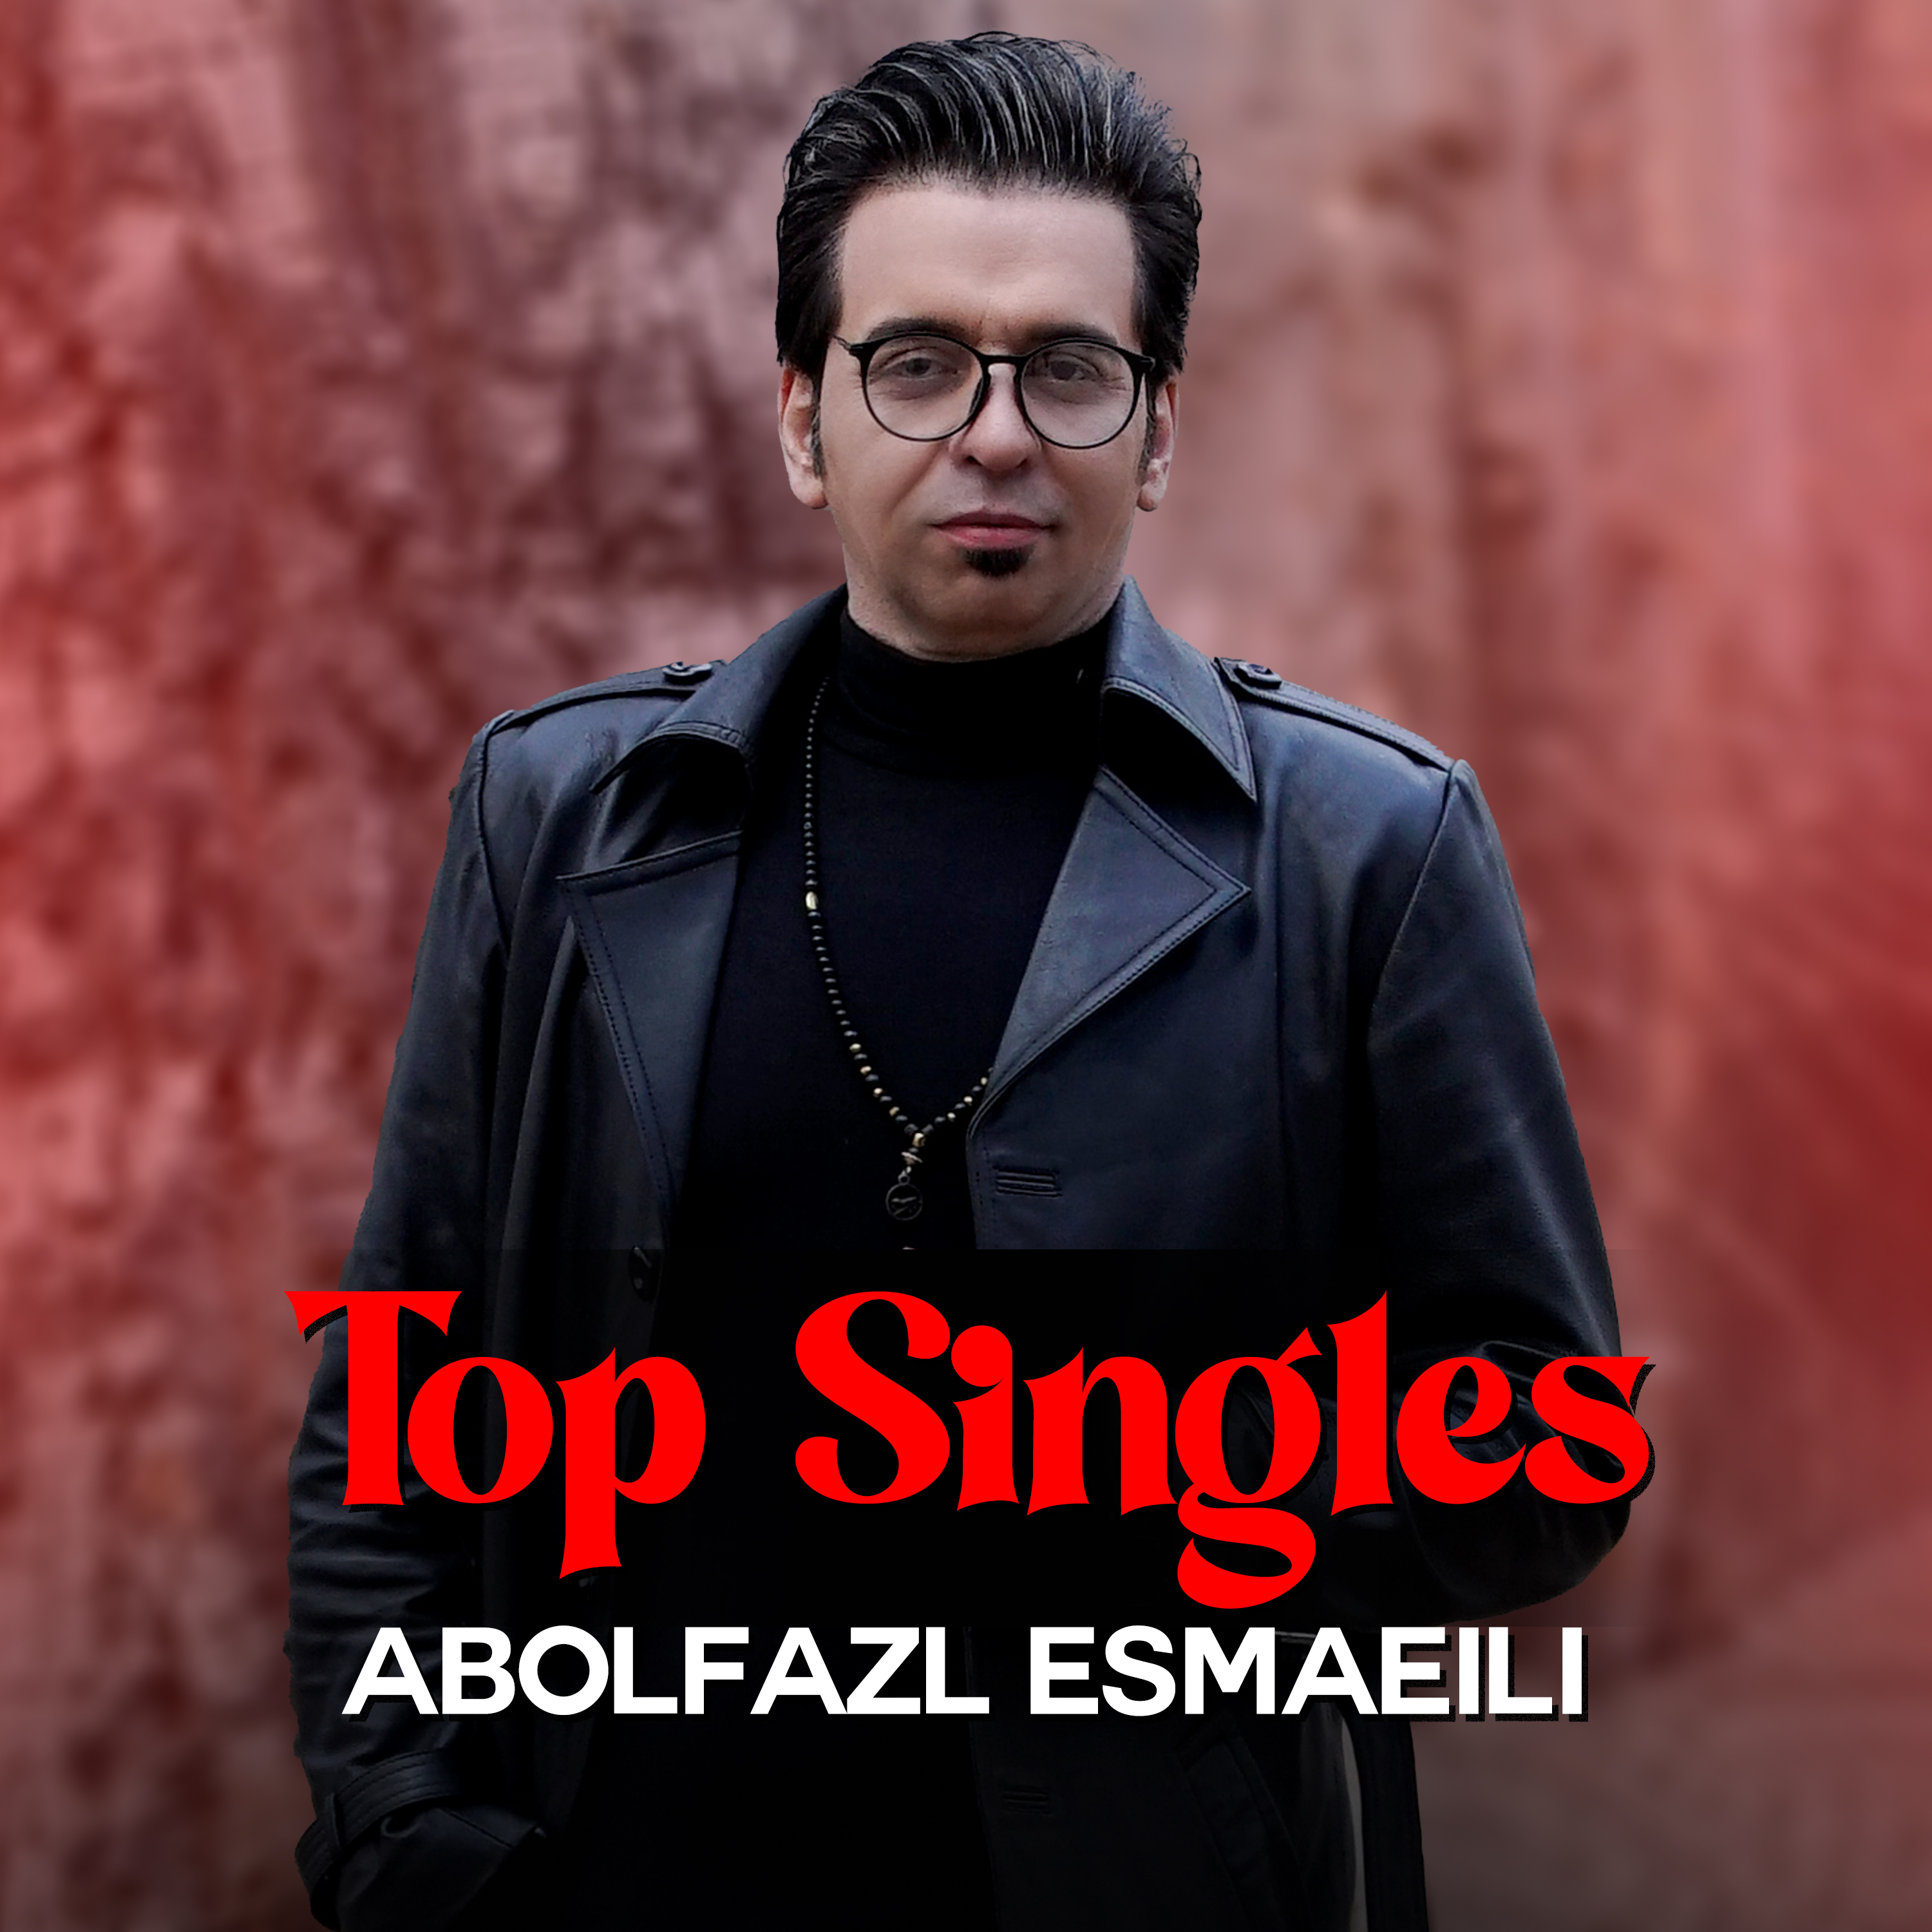  دانلود آهنگ جدید ابوالفضل اسماعیلی - مستوم کن | Download New Music By Abolfazl Esmaeili - Mastom kon